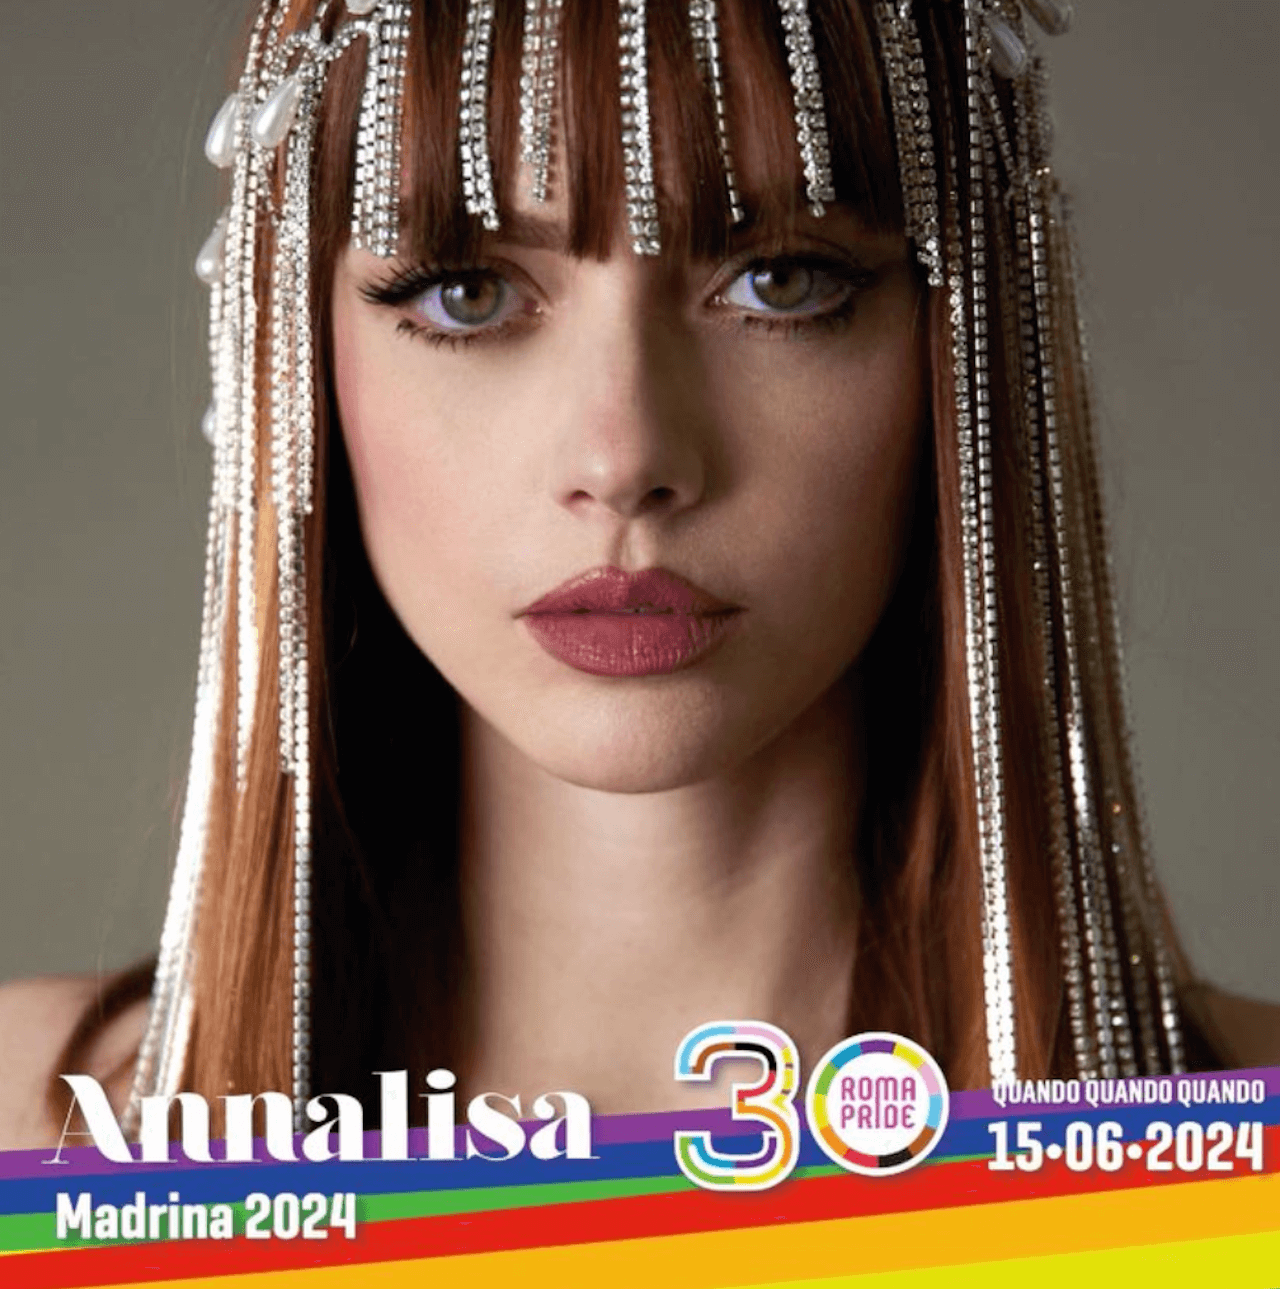 Annalisa madrina del Roma Pride 2024: “Mi riempie di orgoglio come poche cose al mondo” - ANNALISA MADRINA DEL ROMA PRIDE 2024 foto - Gay.it